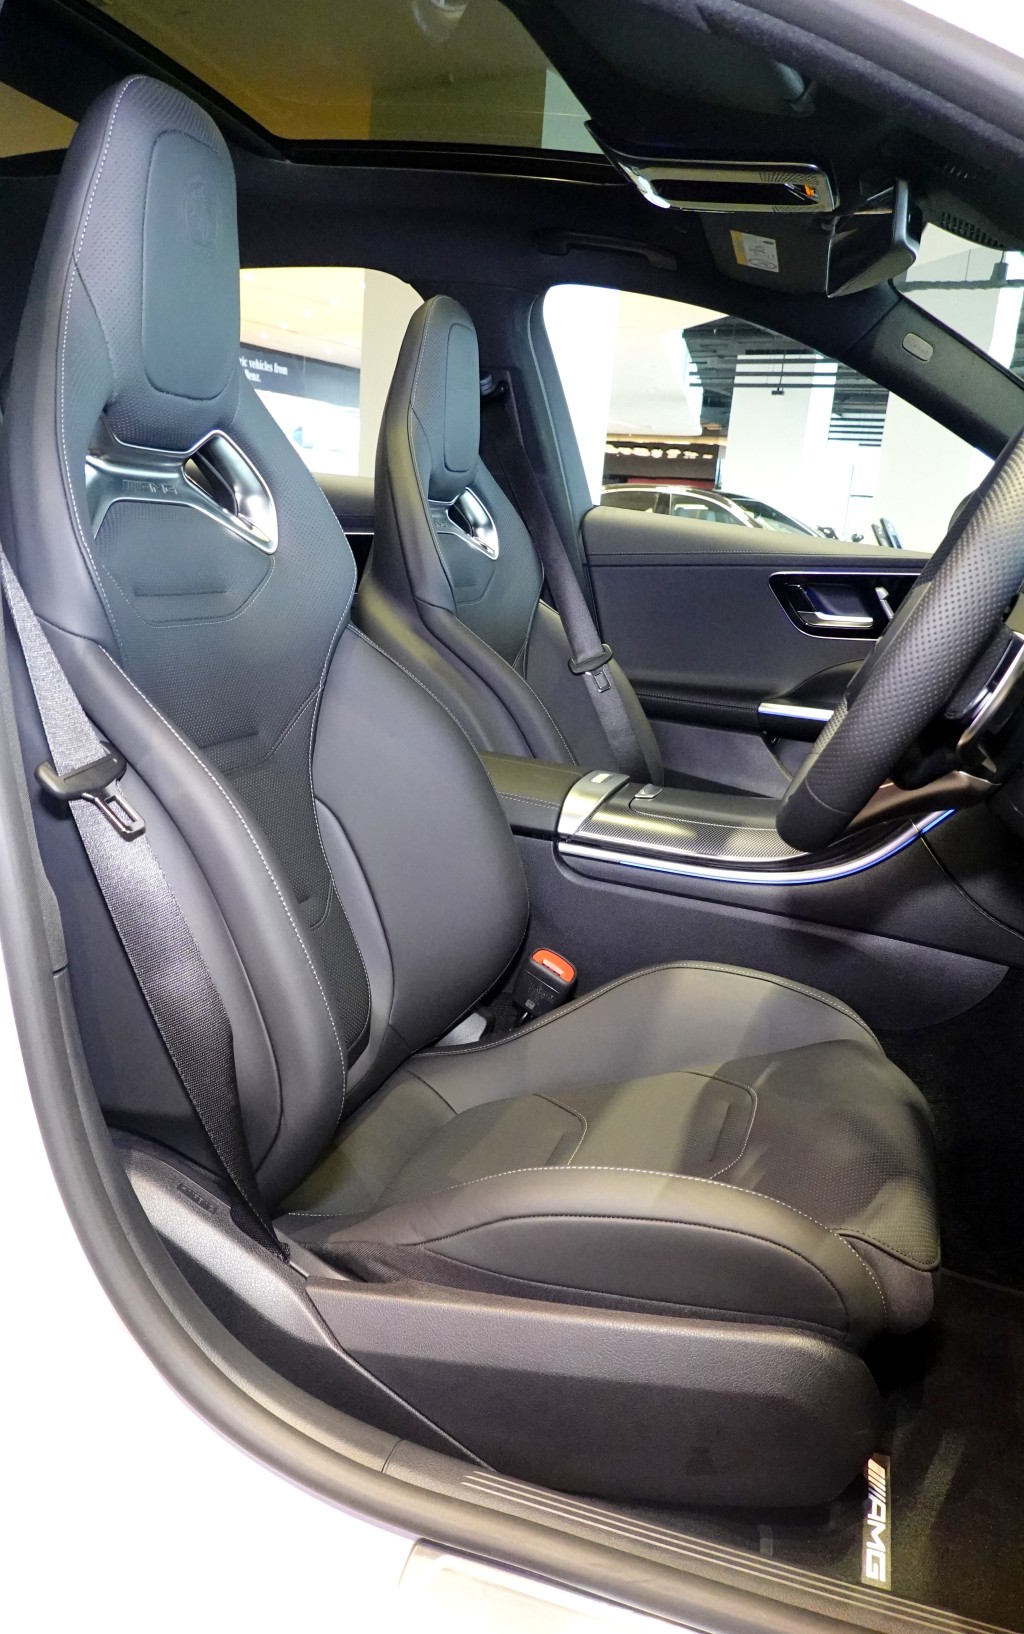 平治AMG C63 S E-Performance电动跑车桶座椅内附电热功能